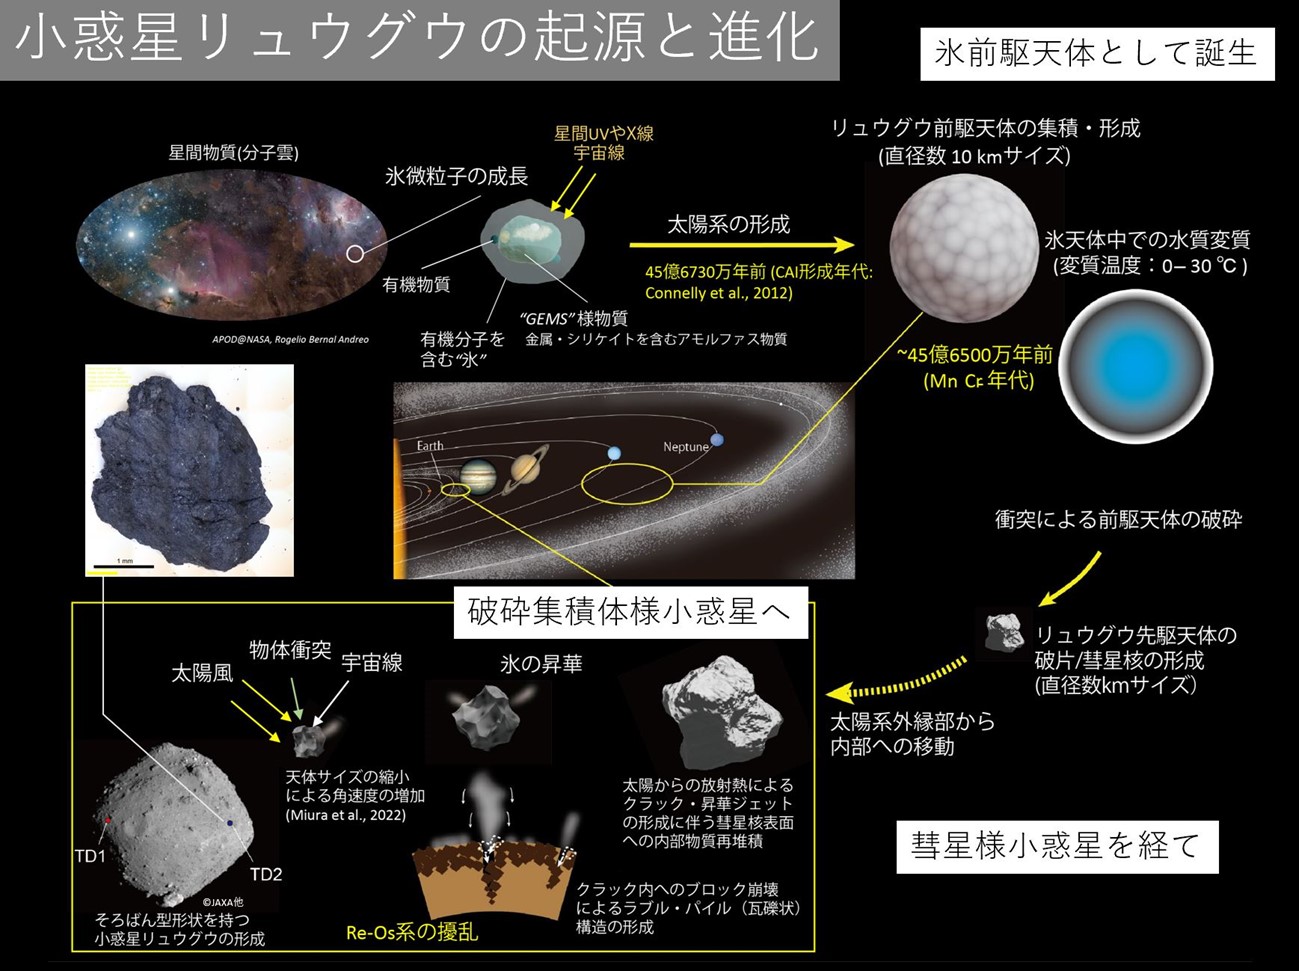 図1　小惑星リュウグウの起源と進化1)（岡山大学 中村栄三 特任教授 提供）